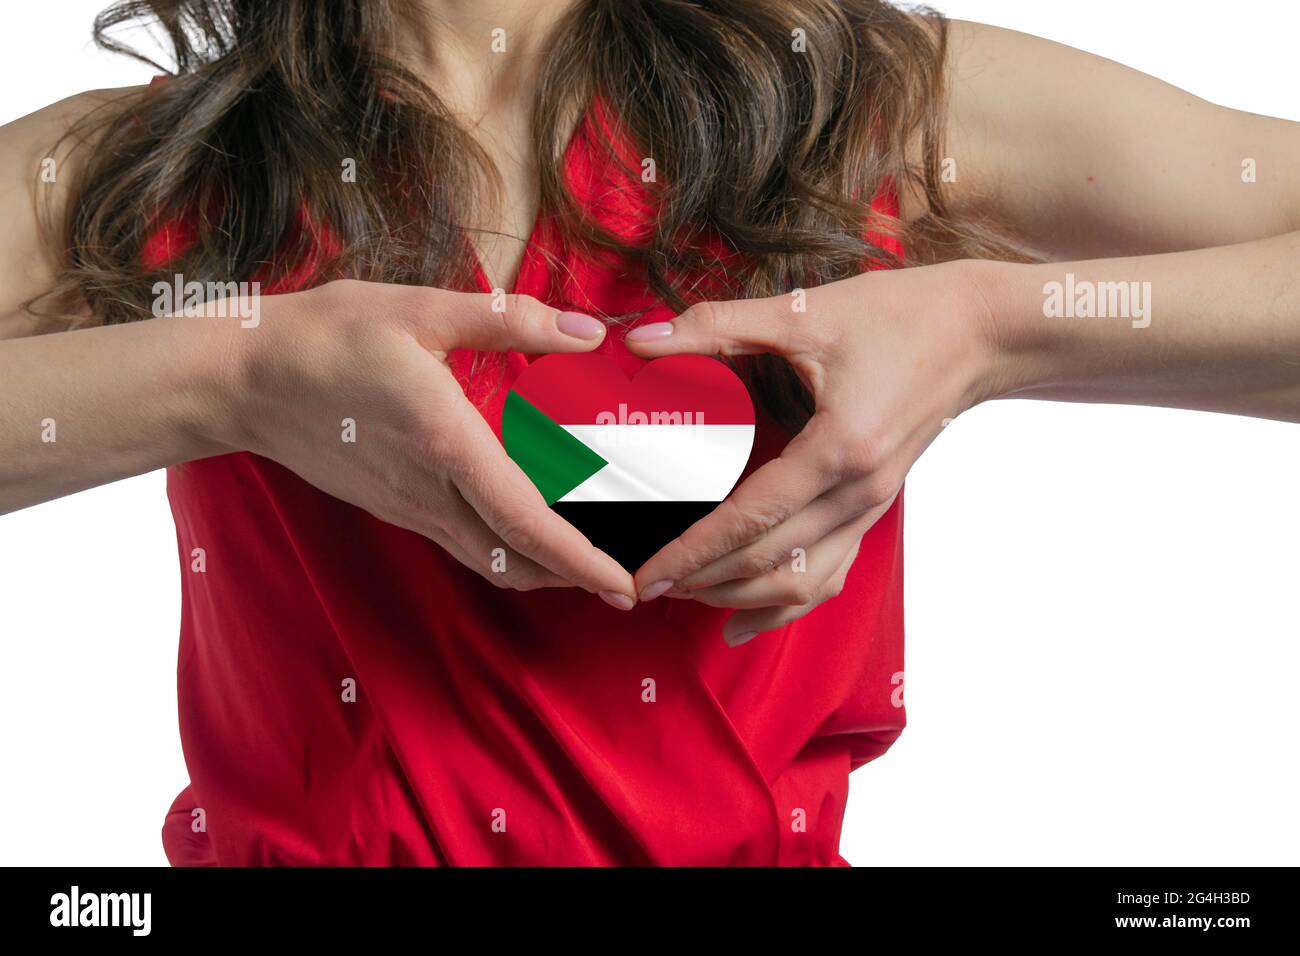 Ich Liebe Den Sudan. Die Frau hält ein Herz in Form der Flagge des Sudan auf ihrer Brust. Konzept des Patriotismus. Stockfoto